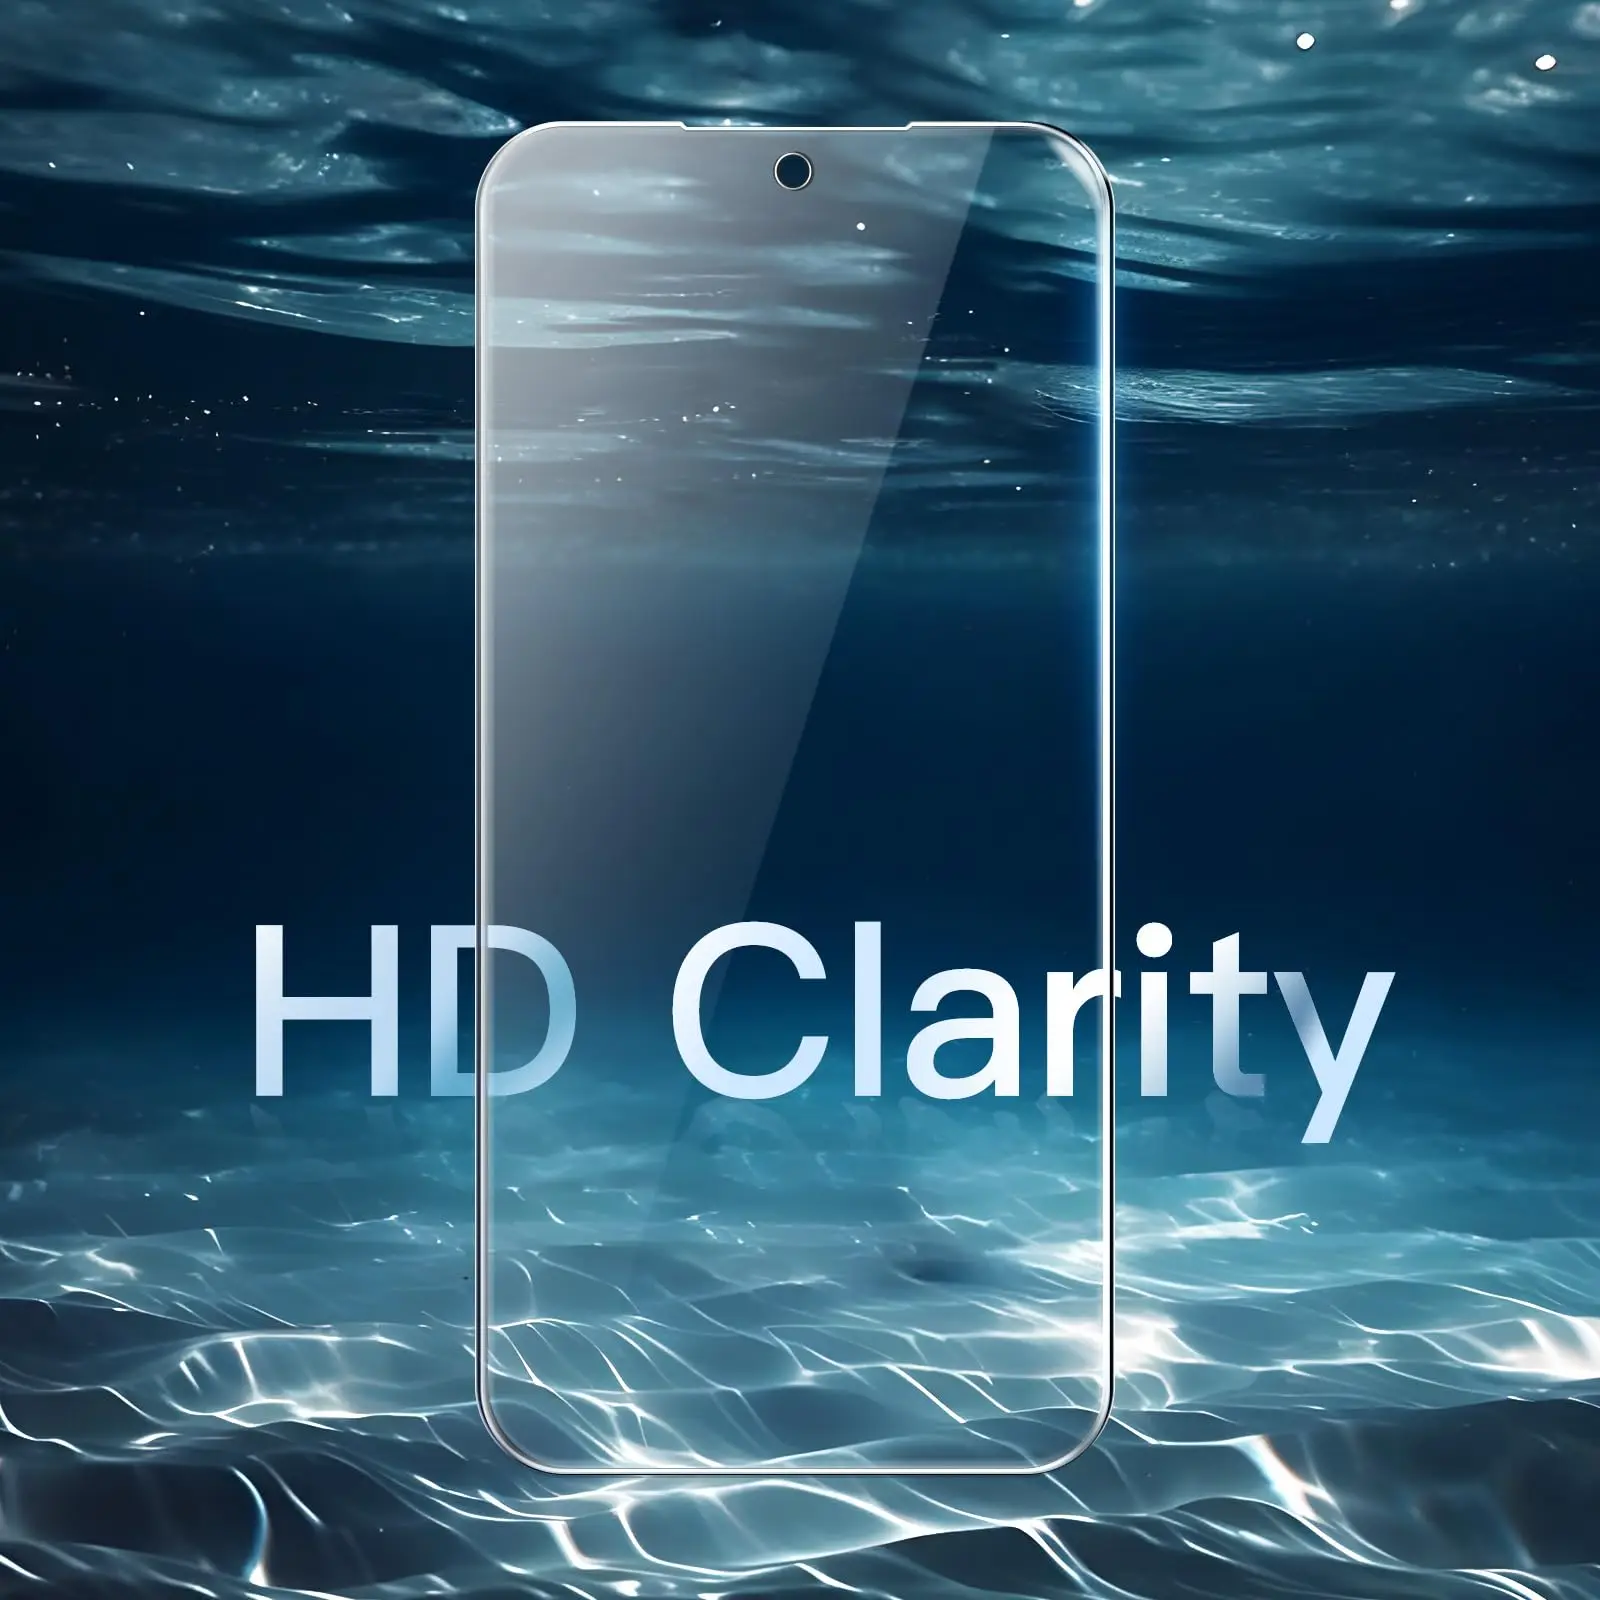 Pellicola salvaschermo per Galaxy S23 FE Samsung, vetro temperato HD 9H custodia antigraffio in alluminio alta amichevole spedizione gratuita